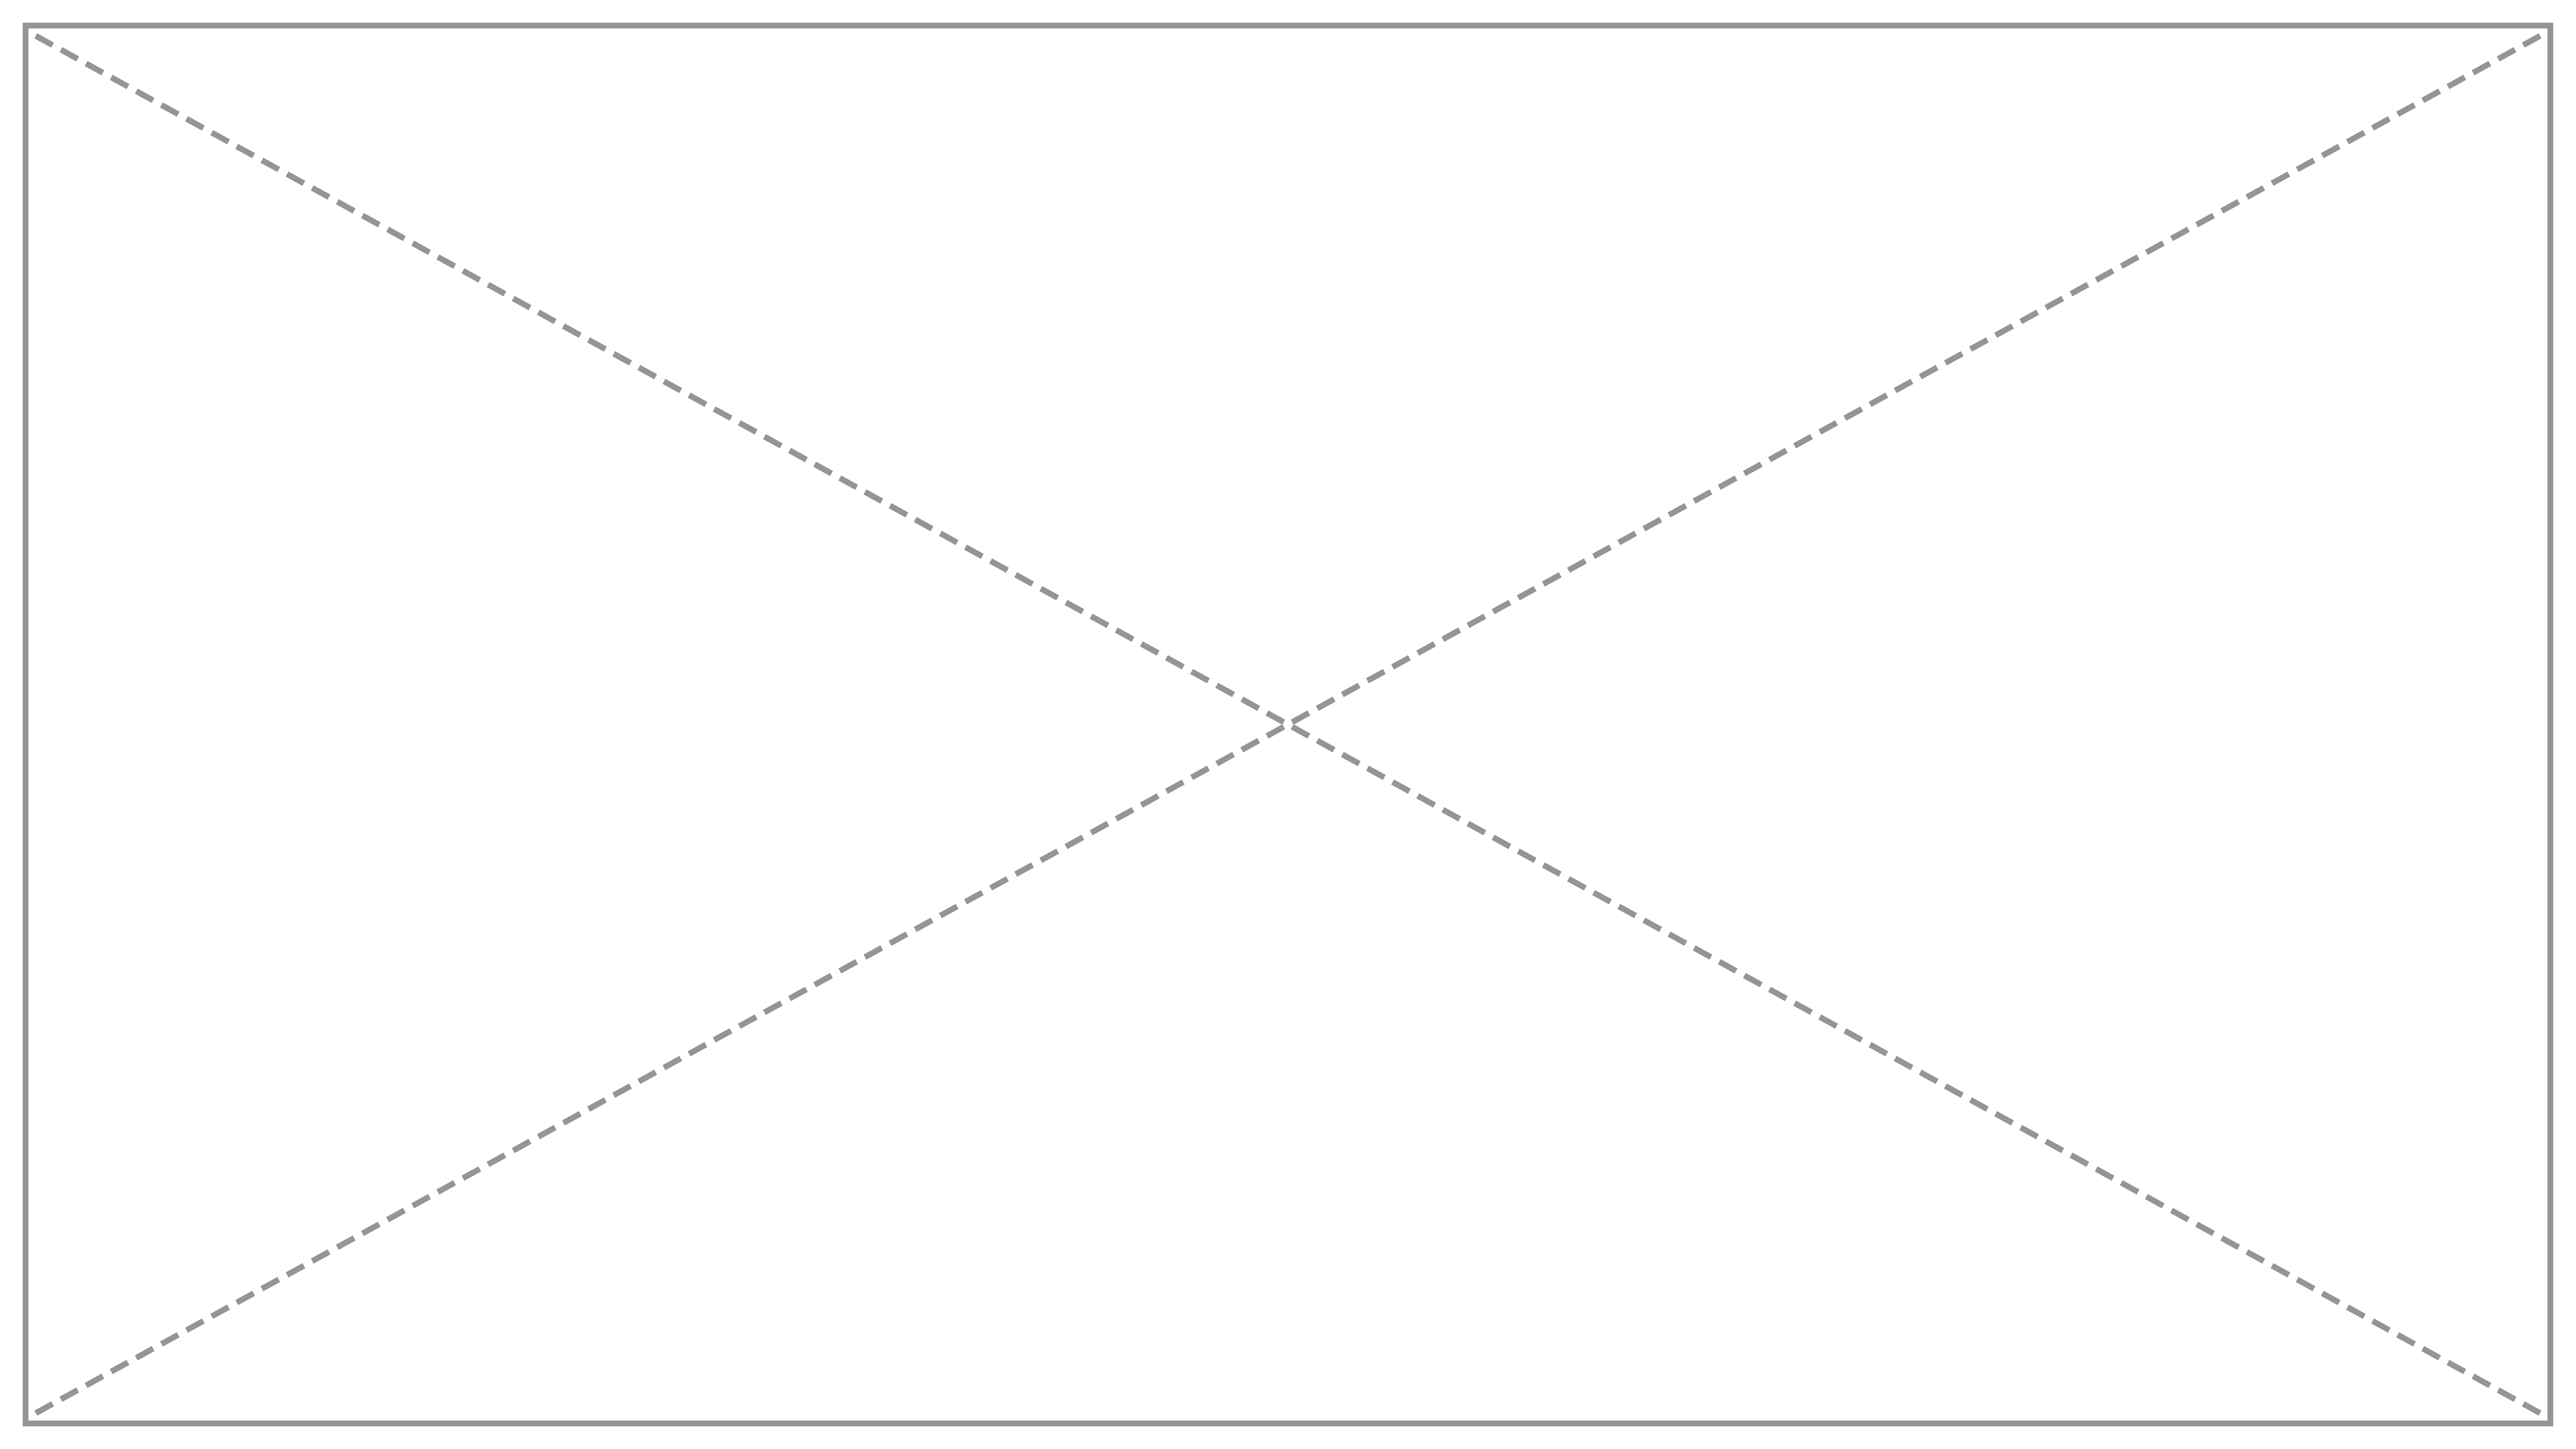 Заглавное изображение проекта: белый прямоугольник, пересеченный по диагонали пунктирными серыми линиями